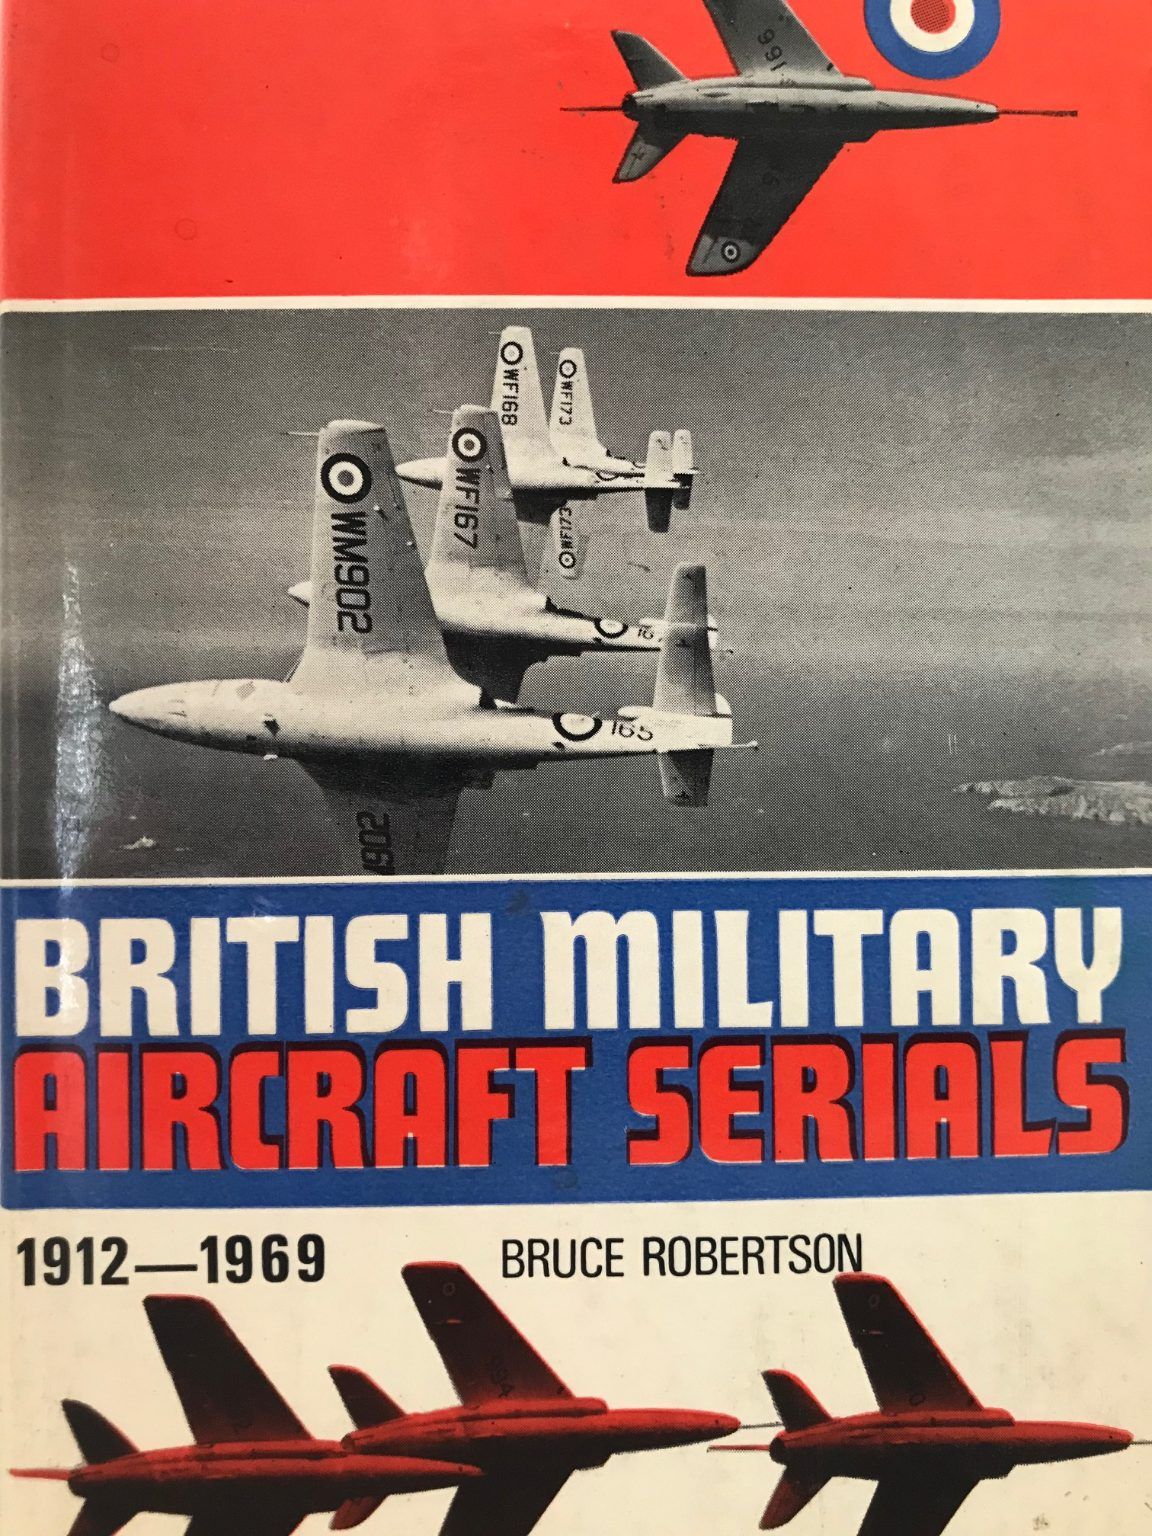 BRITISH MILITARY AIRCRAFT SERIALS 1912-1969